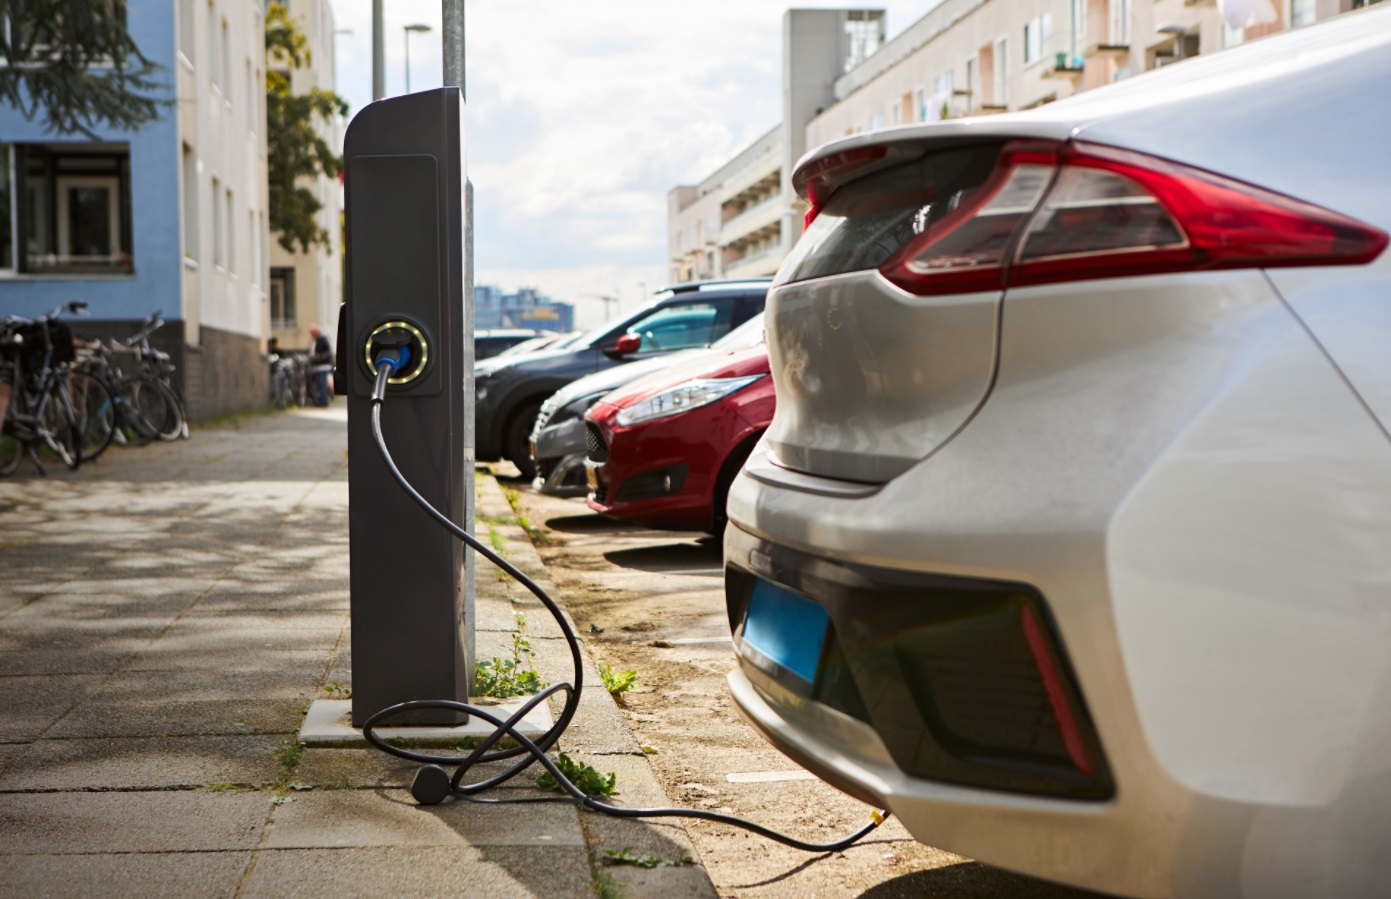 Les ventes de véhicules électriques pourraient dépasser les ventes de voitures traditionnelles en Europe d’ici 2025